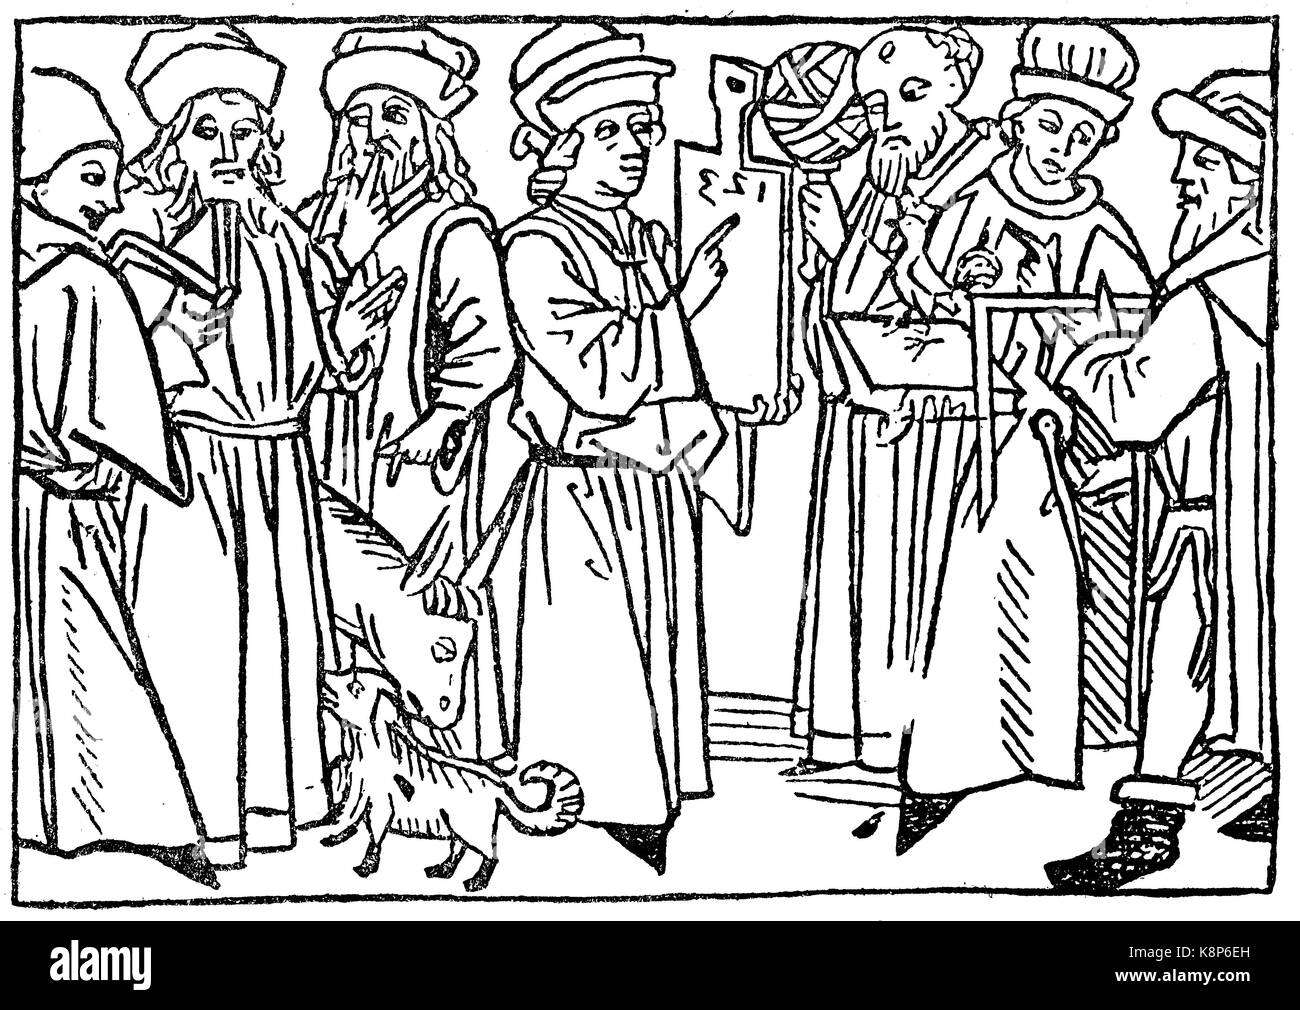 Les sept articles de guildes, Symbolbild für die sieben freien Zünfte, 1479, l'amélioration numérique reproduction d'une gravure sur bois, publié dans le 19e siècle Banque D'Images